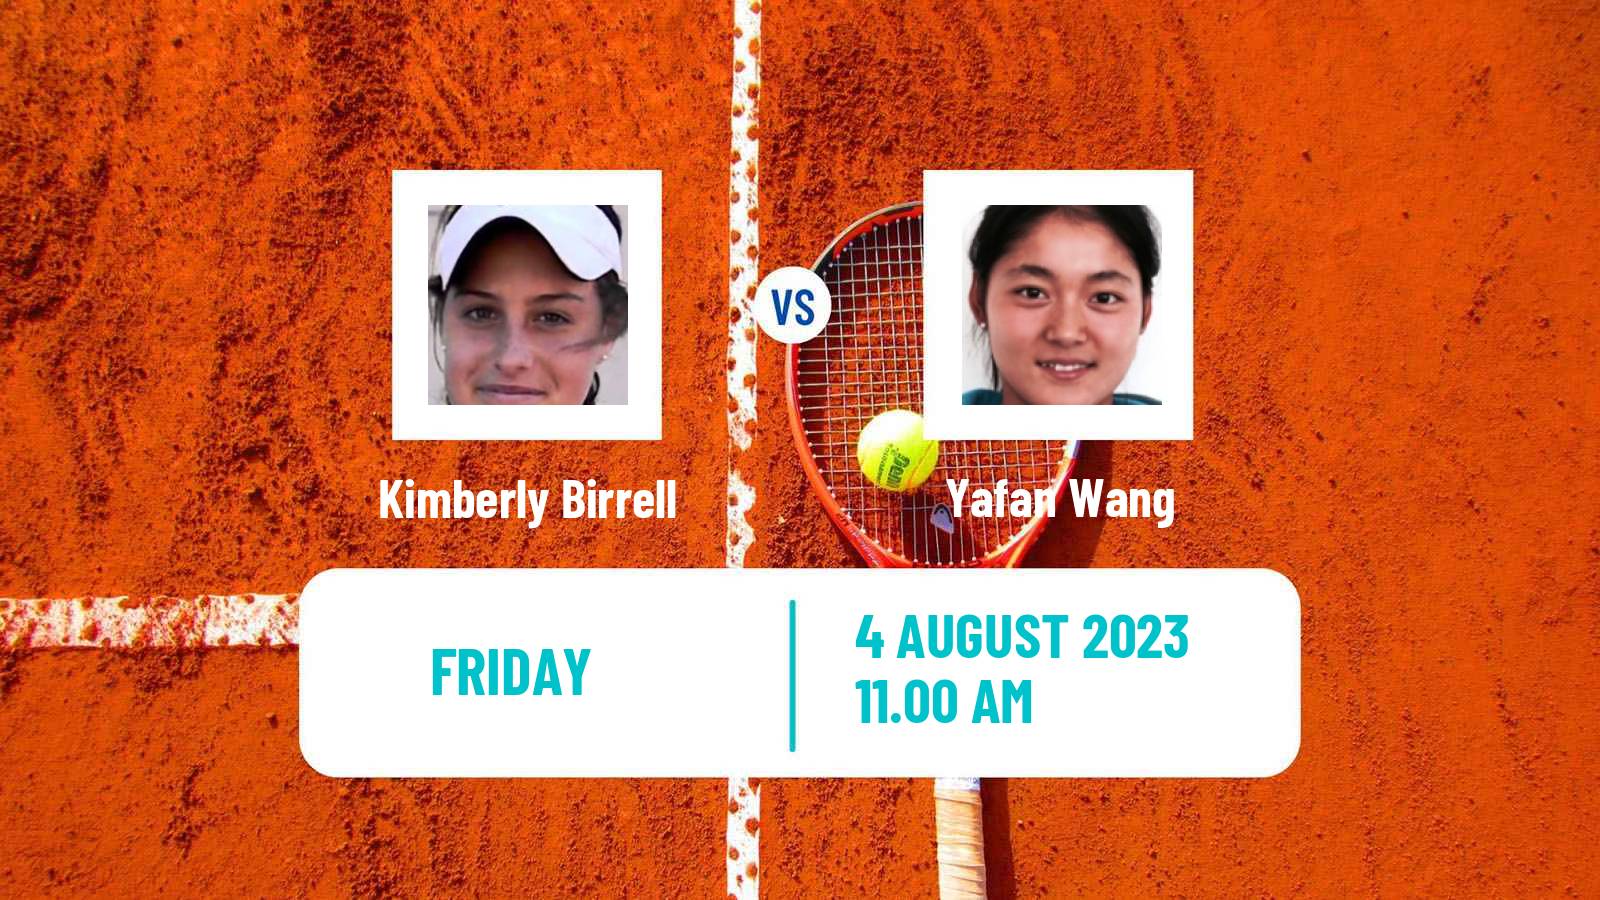 Tennis ITF W60 Lexington Ky Women Kimberly Birrell - Yafan Wang